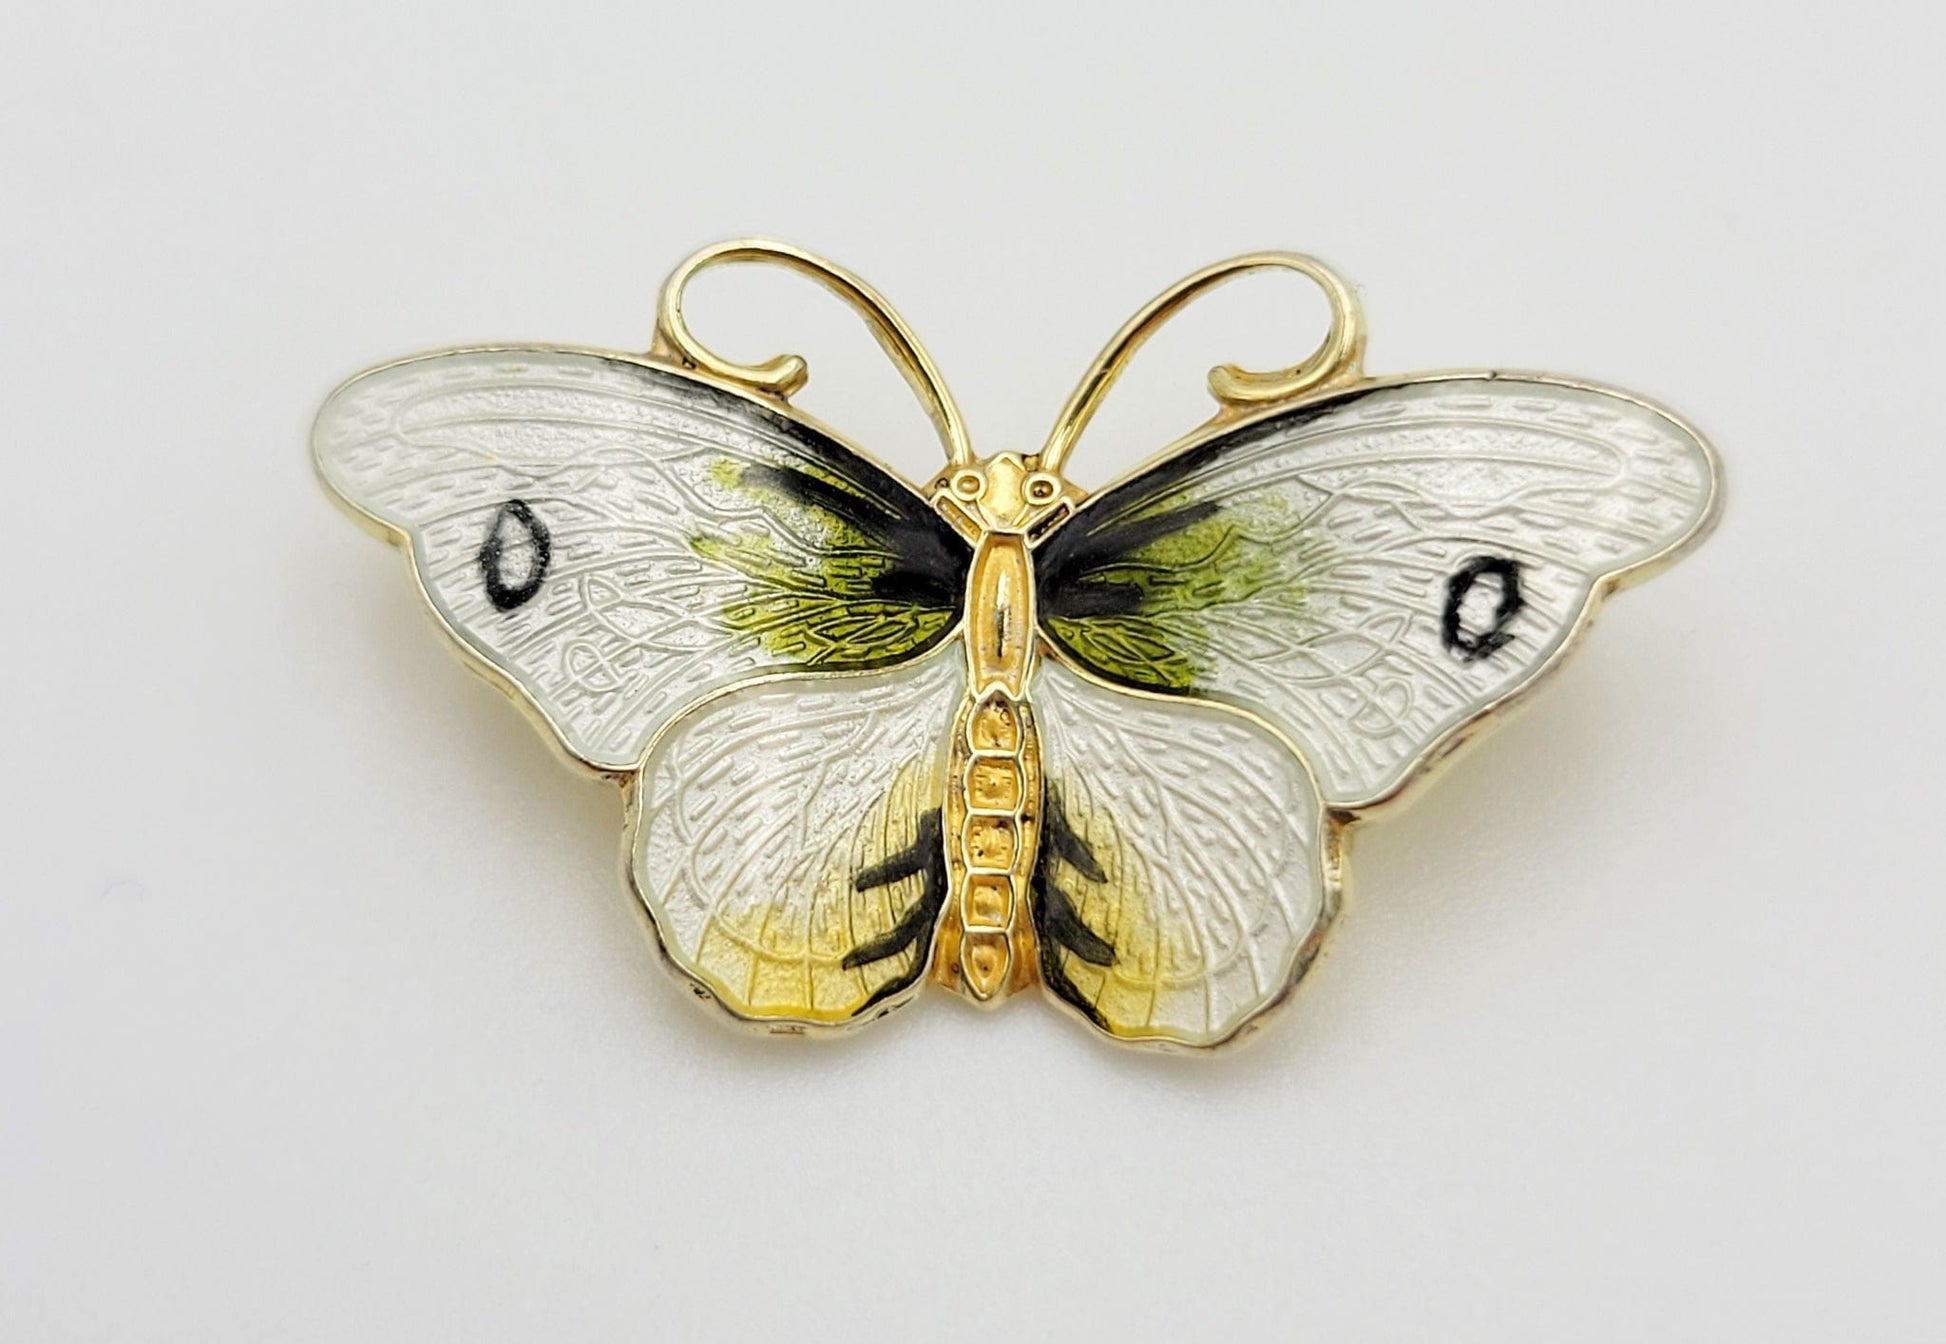 Hroar Prydz Jewelry Norwegian Designer Hroar Prydz Sterling & Enamel Butterfly Brooch 20s/30s